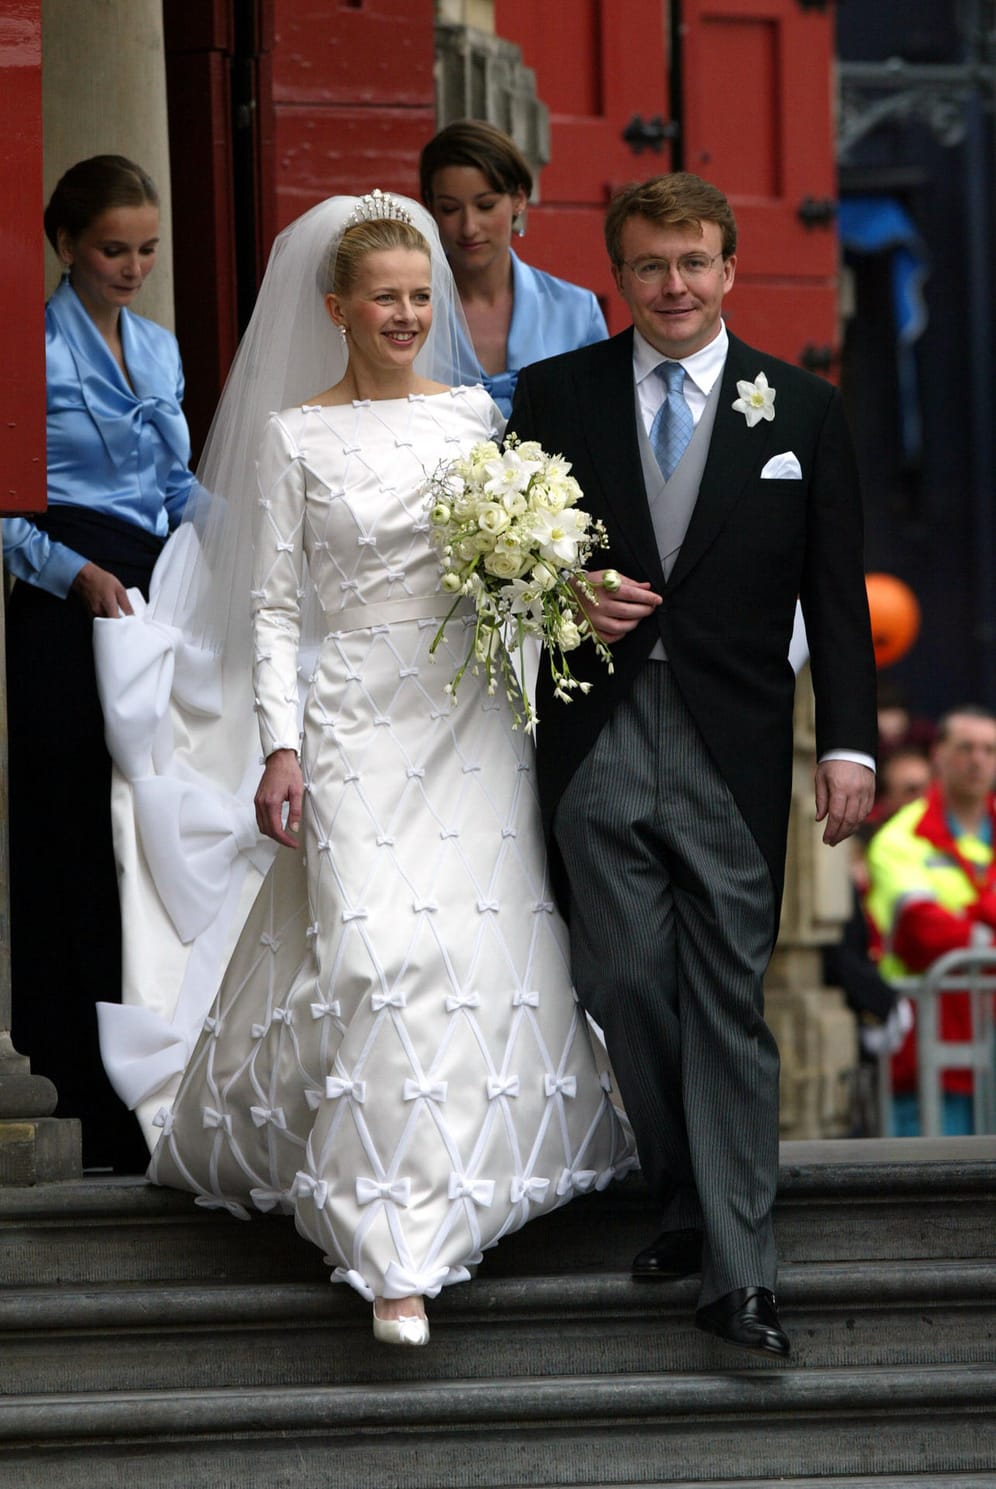 Der 2013 verstorbene Prinz Johan Friso war seit seiner Hochzeit mit Mabel Wisse Smit im Jahr 2004 kein Mitglied der niederländischen Königsfamilie mehr und wurde somit auch nicht mehr in der Thronfolge berücksichtigt.